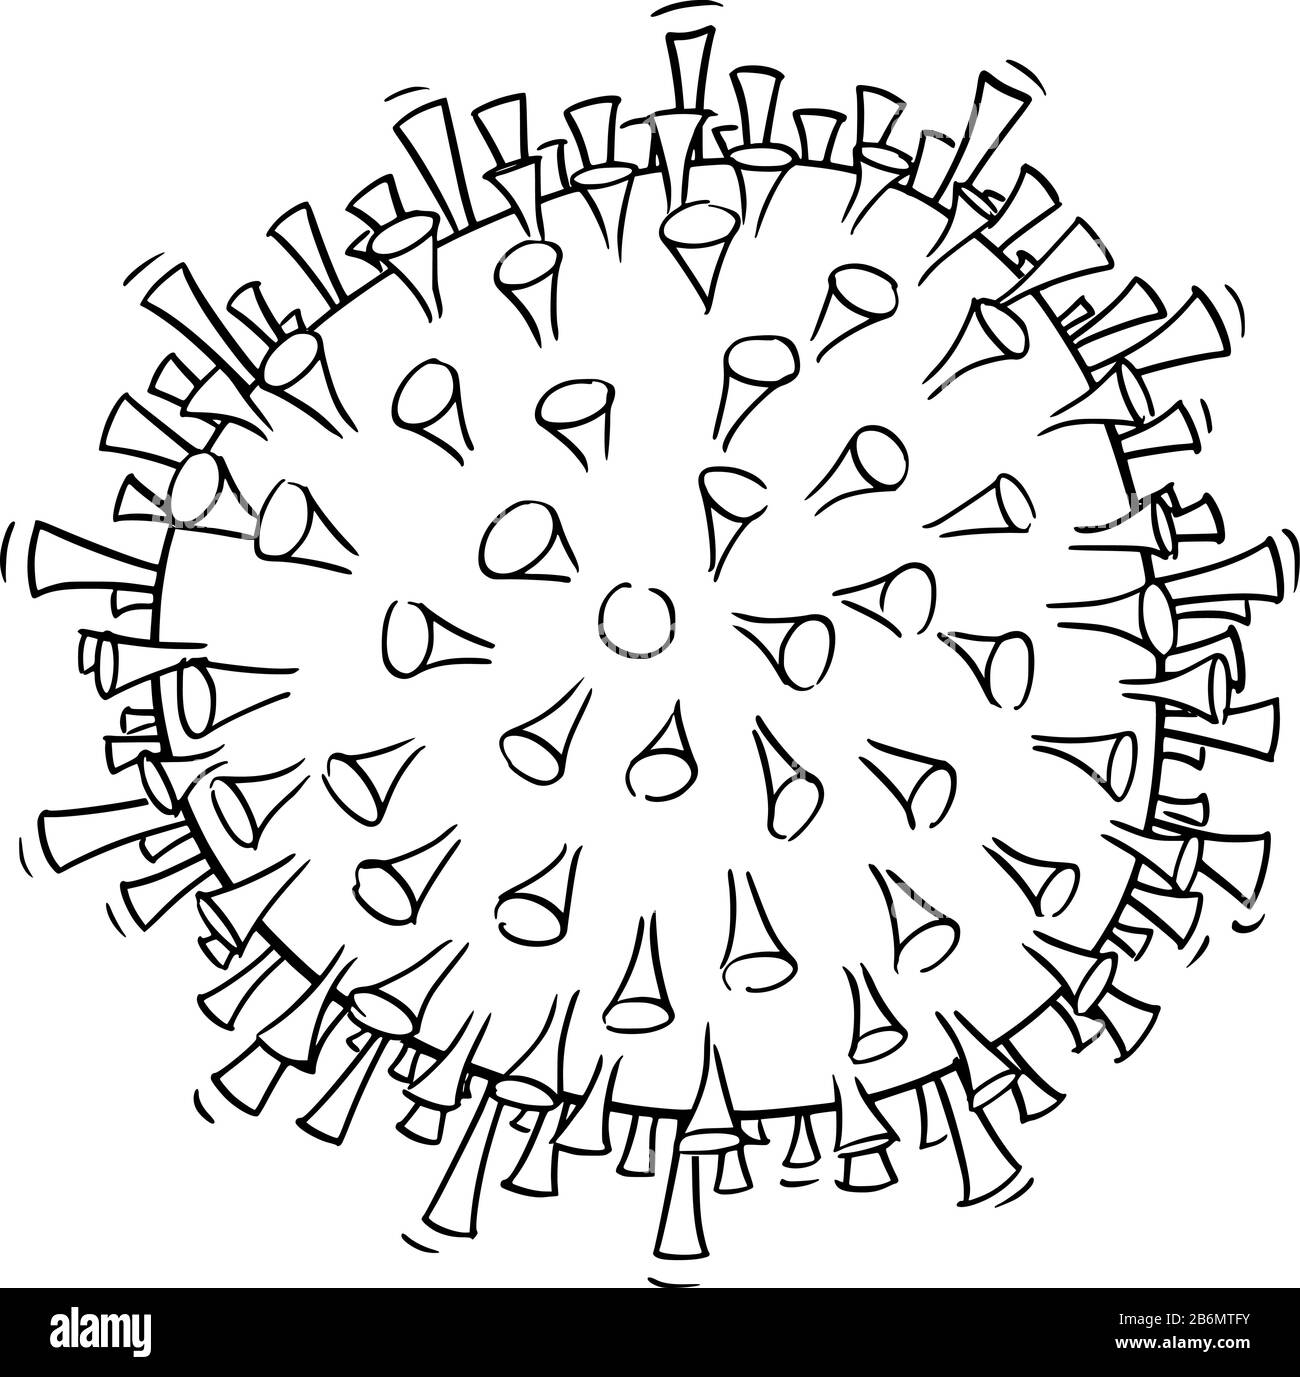 Vektor Schwarz-Weiß-Konzeptzeichnung, Abbildung oder Design von Coronavirus Kovid-19 . Stock Vektor